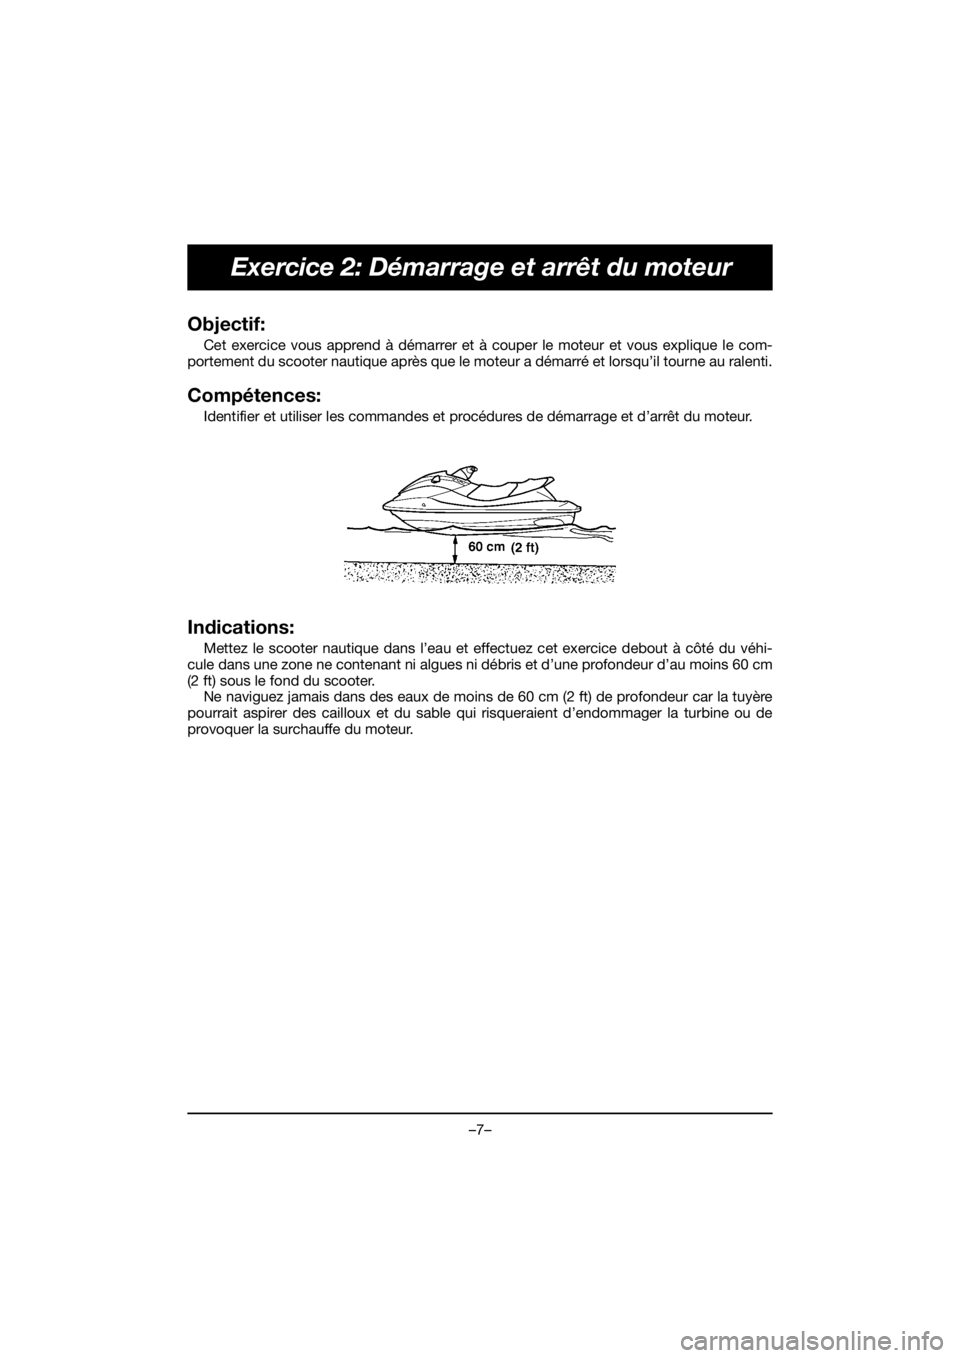 YAMAHA EX DELUXE 2019  Owners Manual –7–
Exercice 2: Démarrage et arrêt du moteur
Objectif: 
Cet exercice vous apprend à démarrer et à couper le moteur et vous explique le com-
portement du scooter nautique après que le moteur 